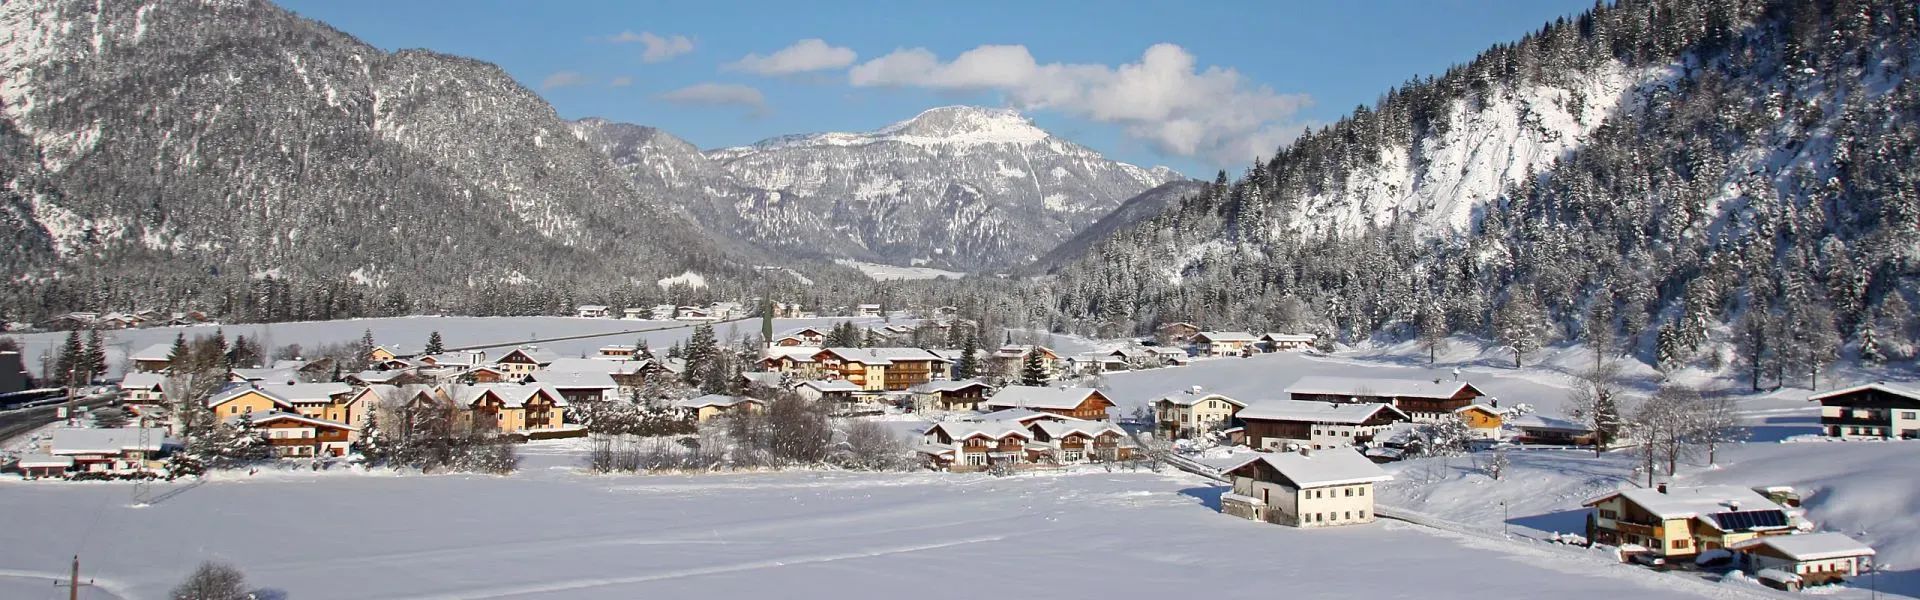 Erpfendorf im Winter - Region St. Johann in Tirol